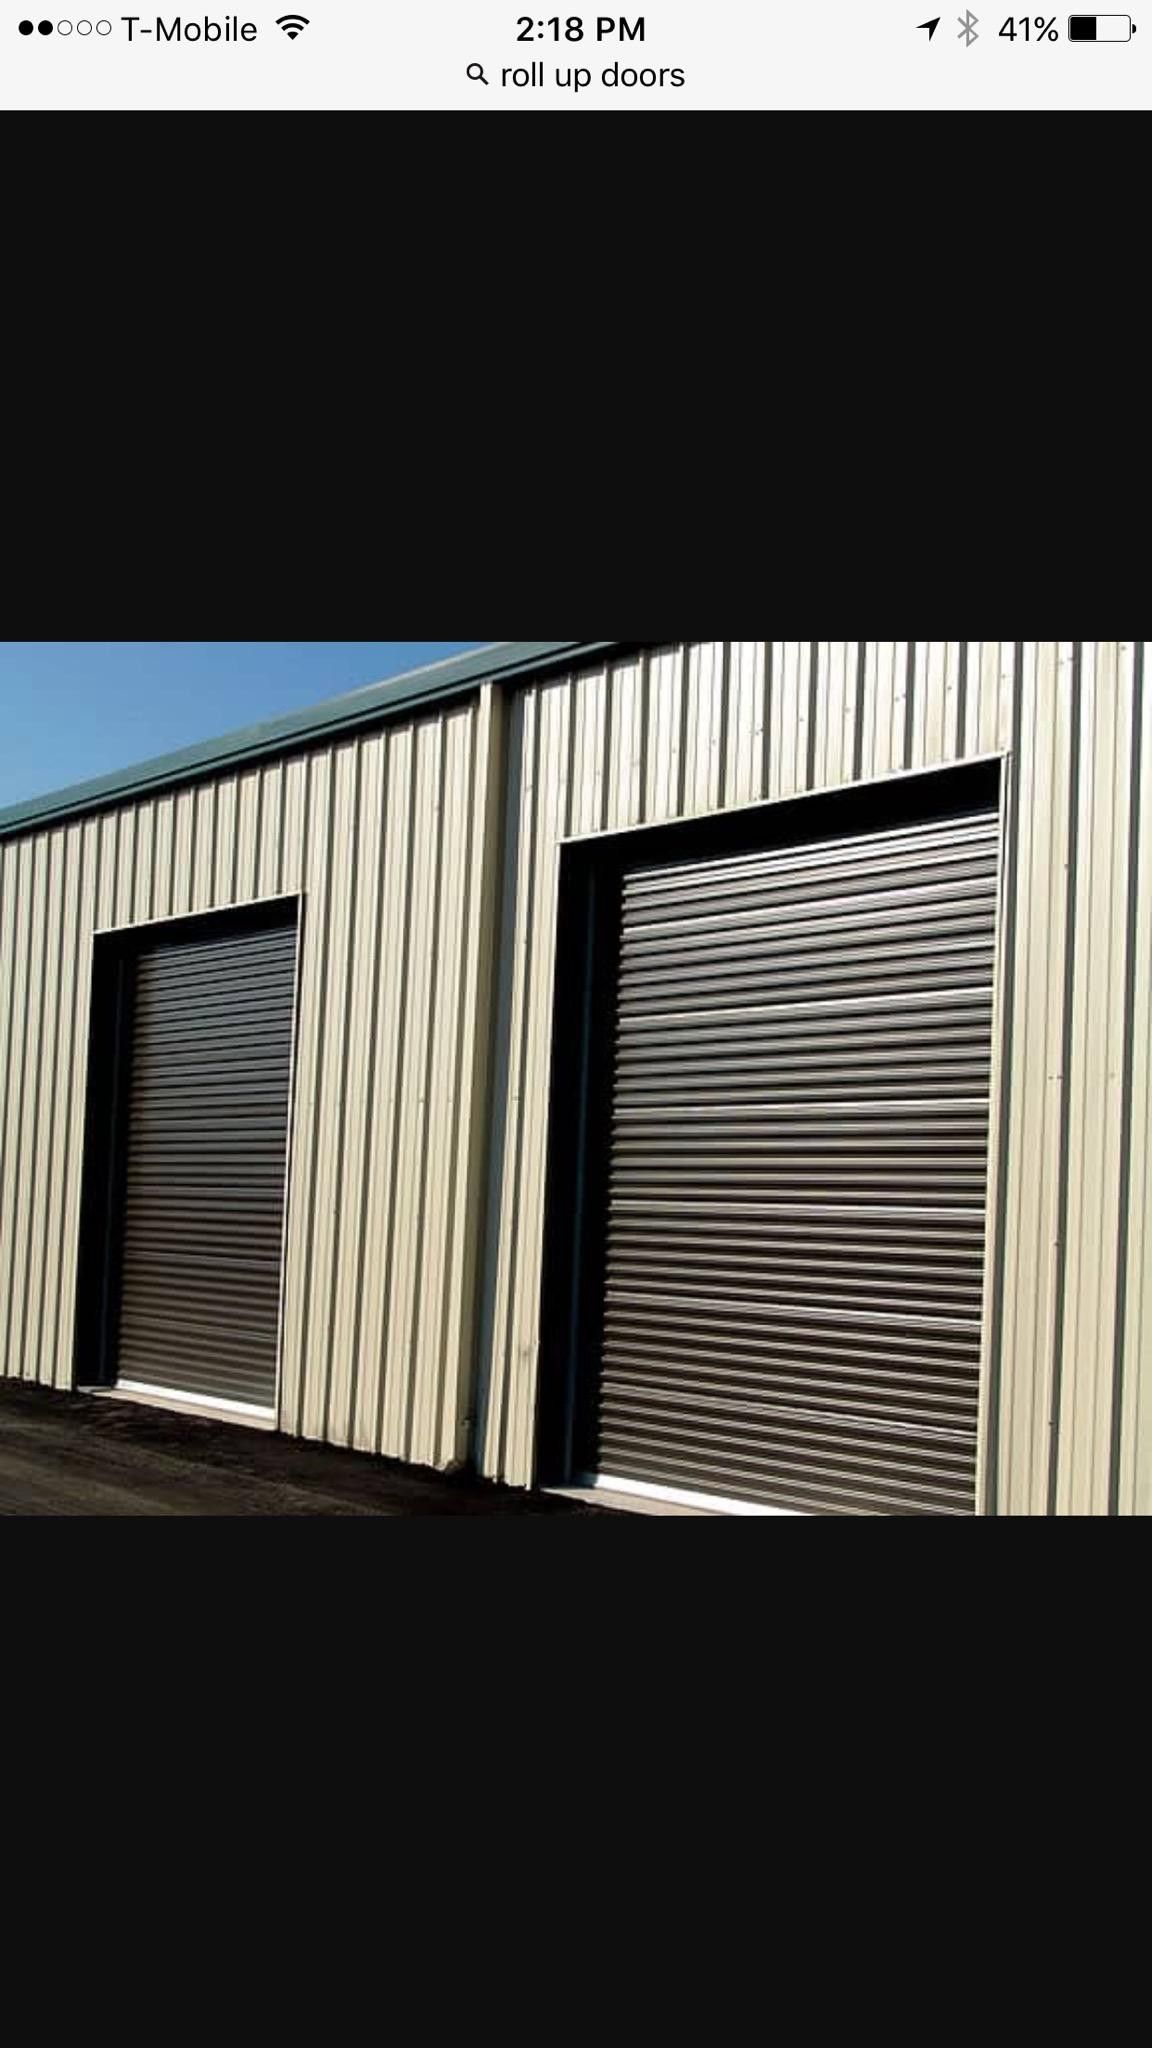 Garage door/Roll up door, dock, warehouse, shed barn door